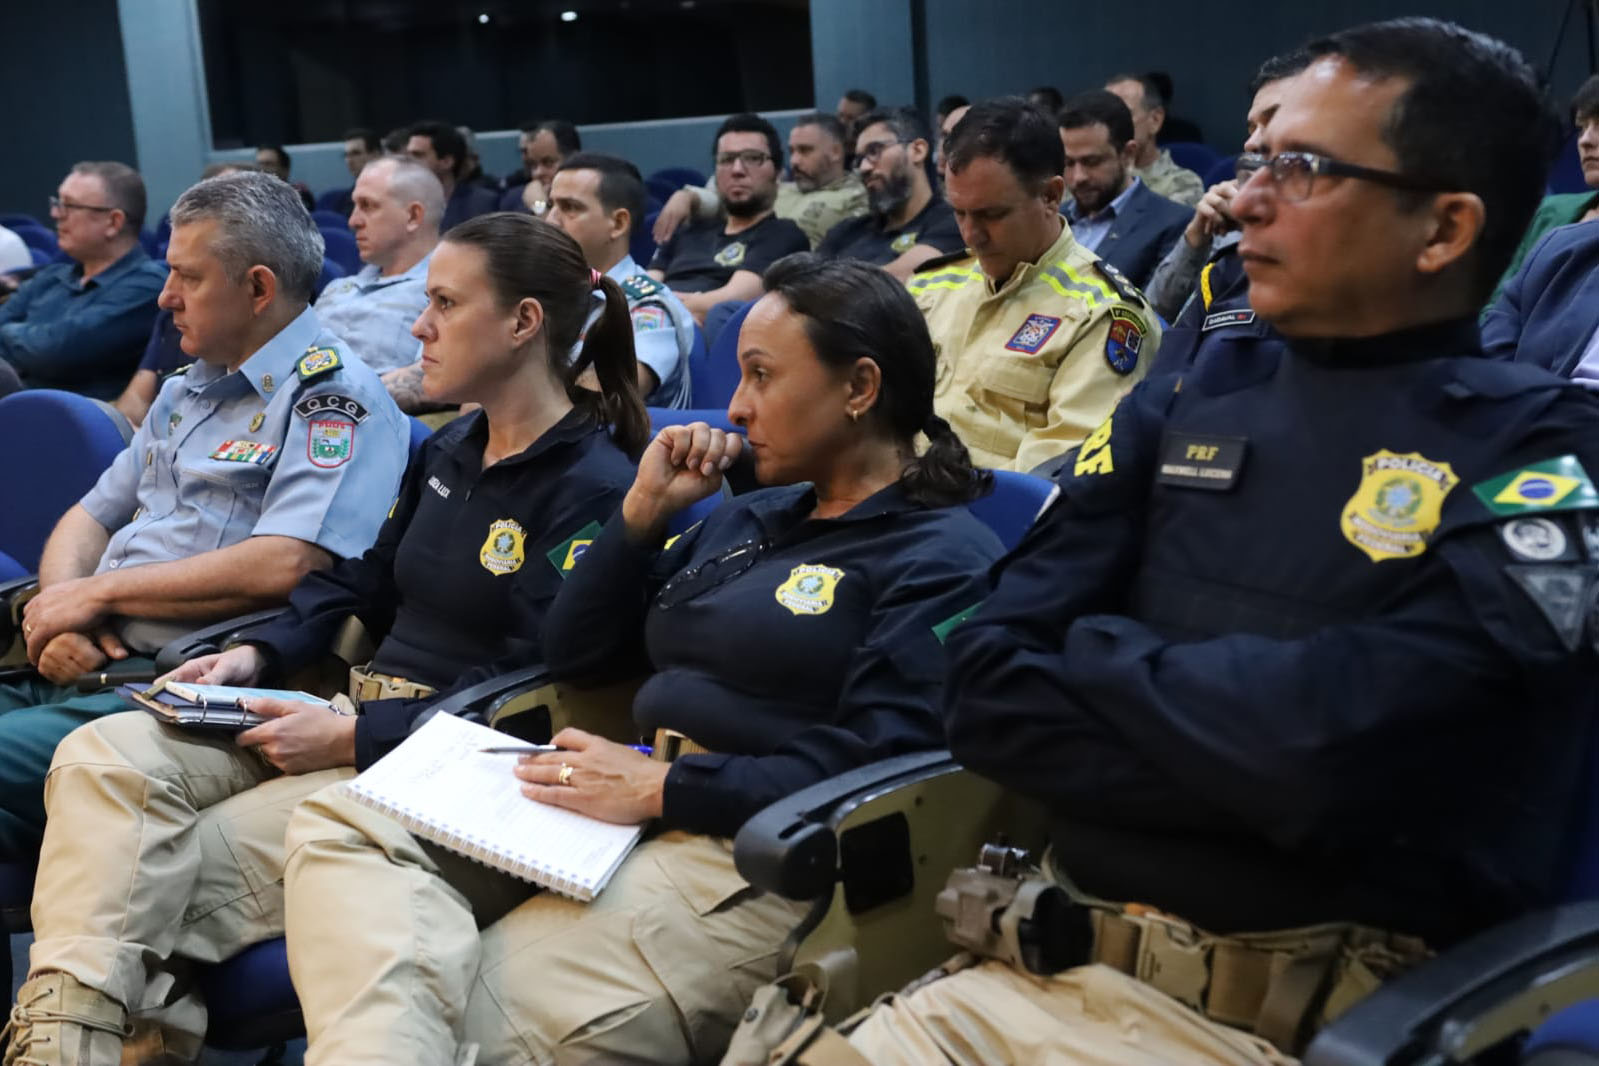 Jornal Ilustrado - Forças de segurança apresentam ações integradas de combate ao crime na fronteira